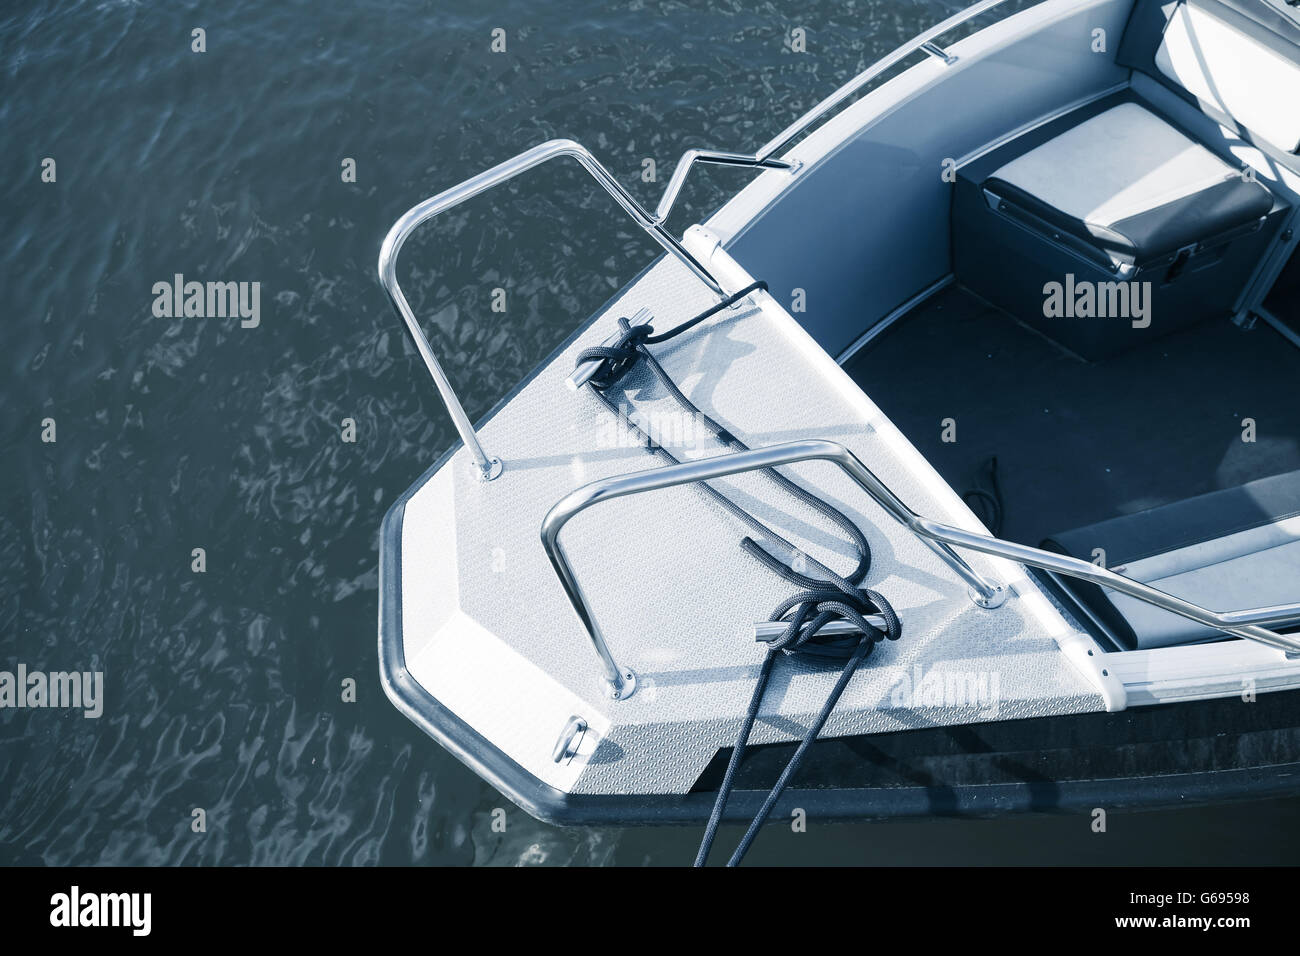 Arc de nouveau metal bateau, photo dans les tons bleus stylisés Banque D'Images